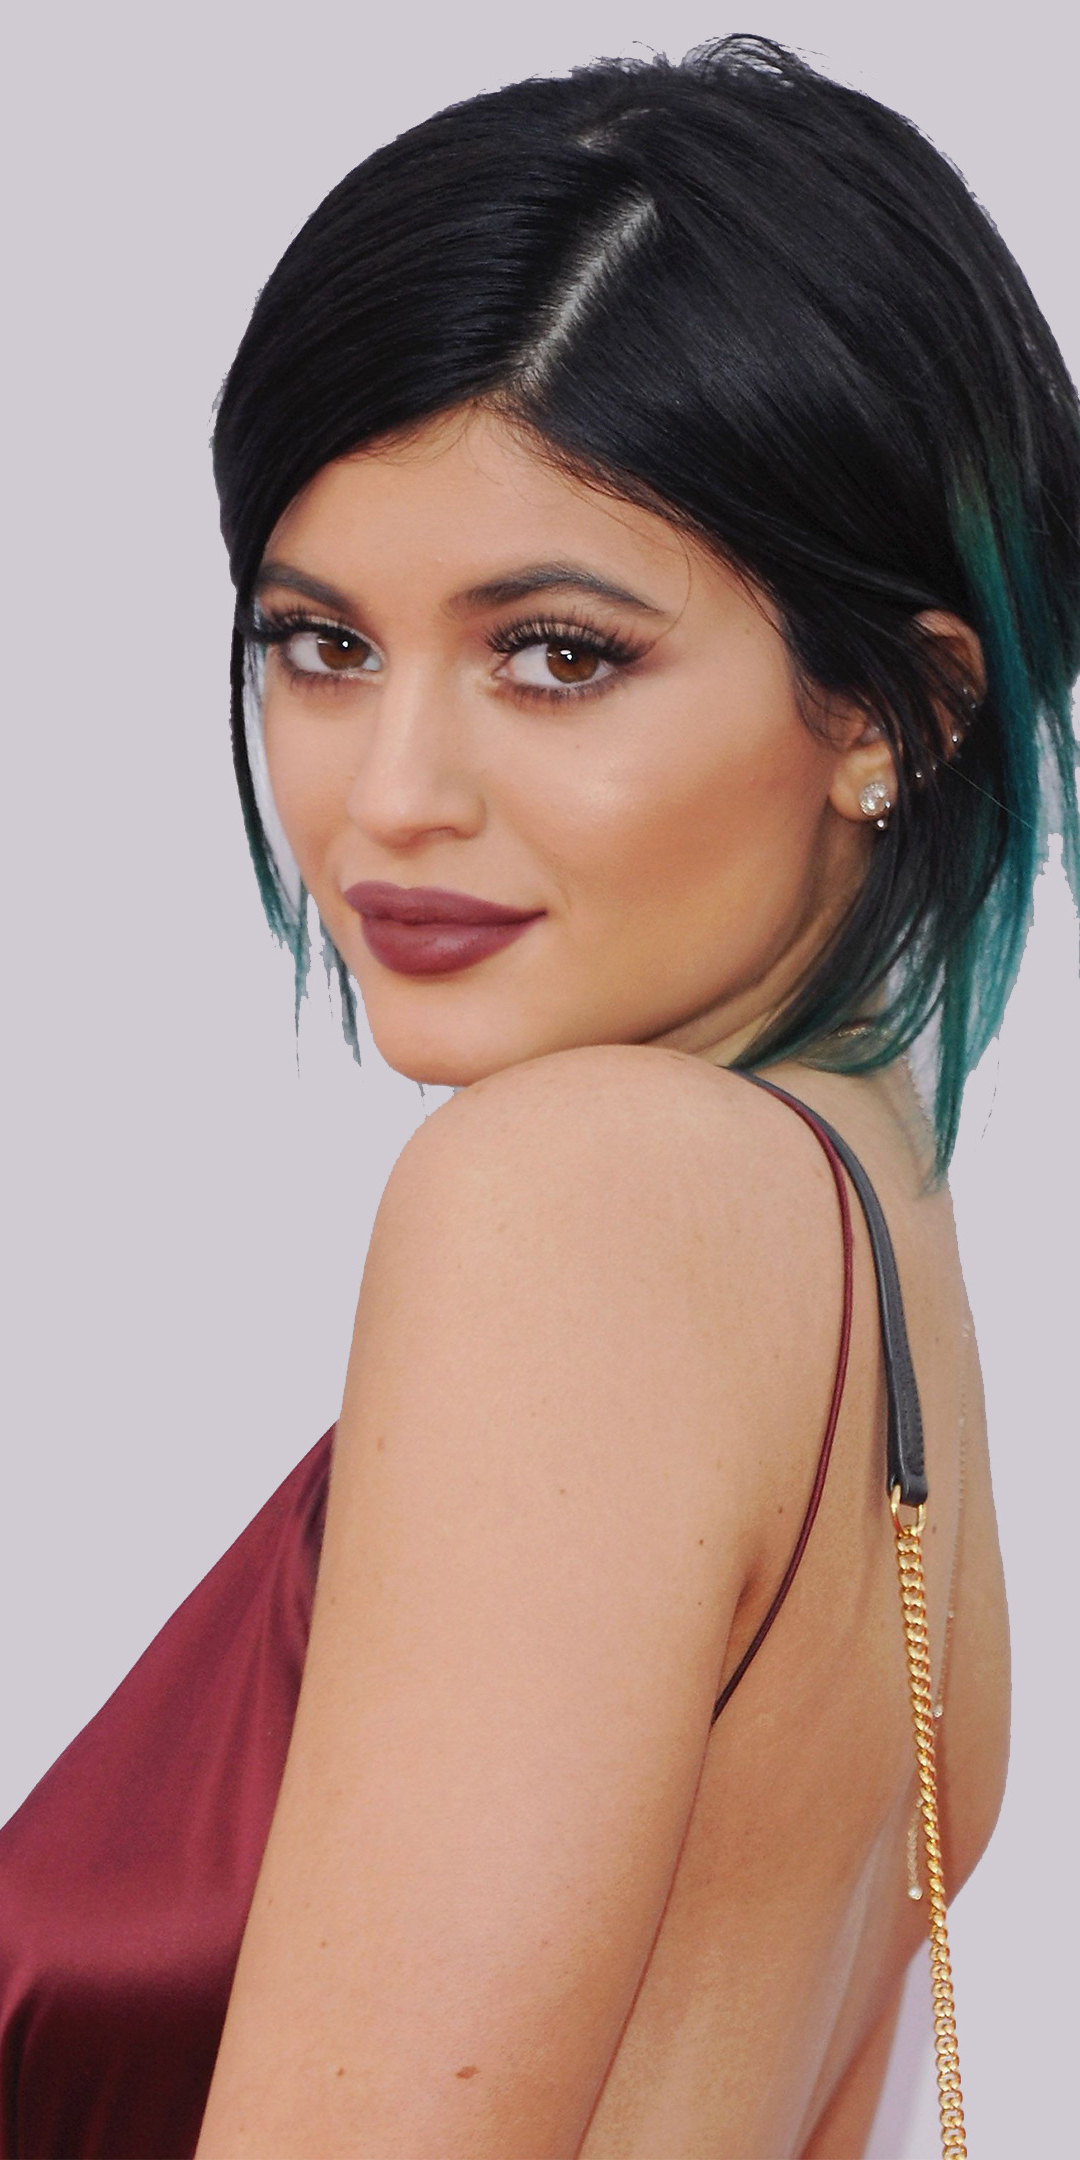 Kylie jenner, model, American beauty, 2018, 1080x2160 wallpaper